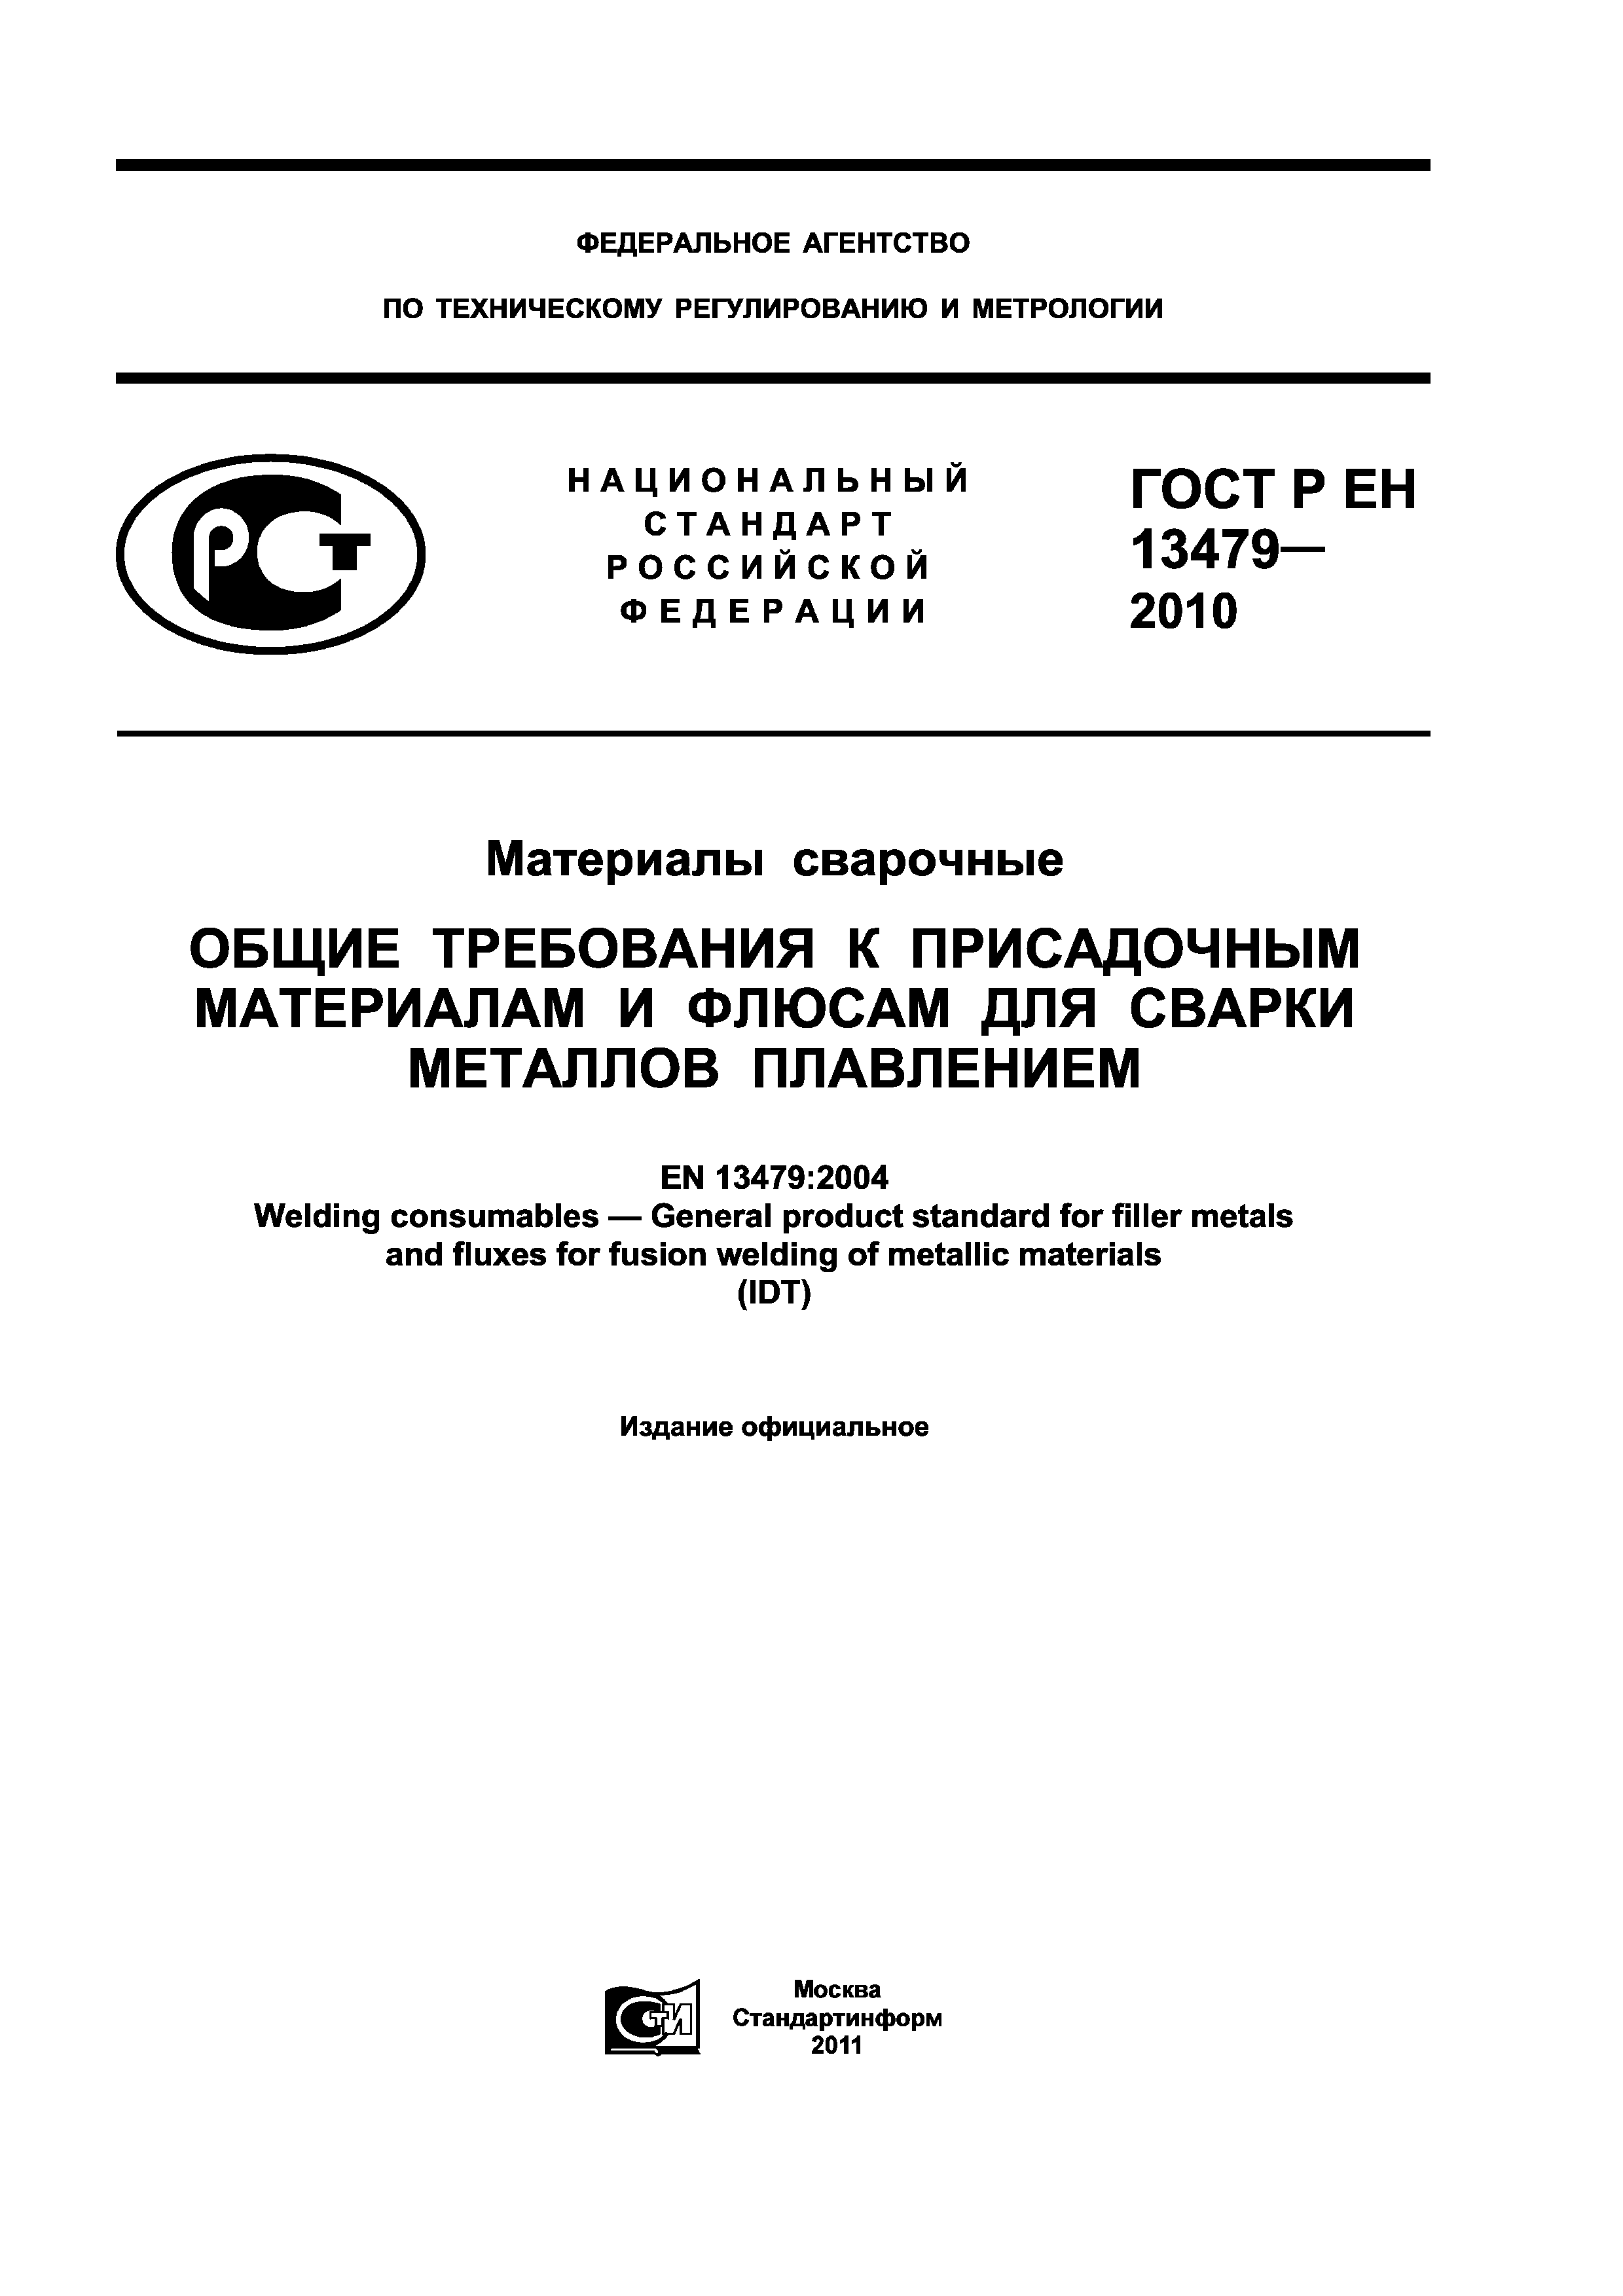 ГОСТ Р ЕН 13479-2010